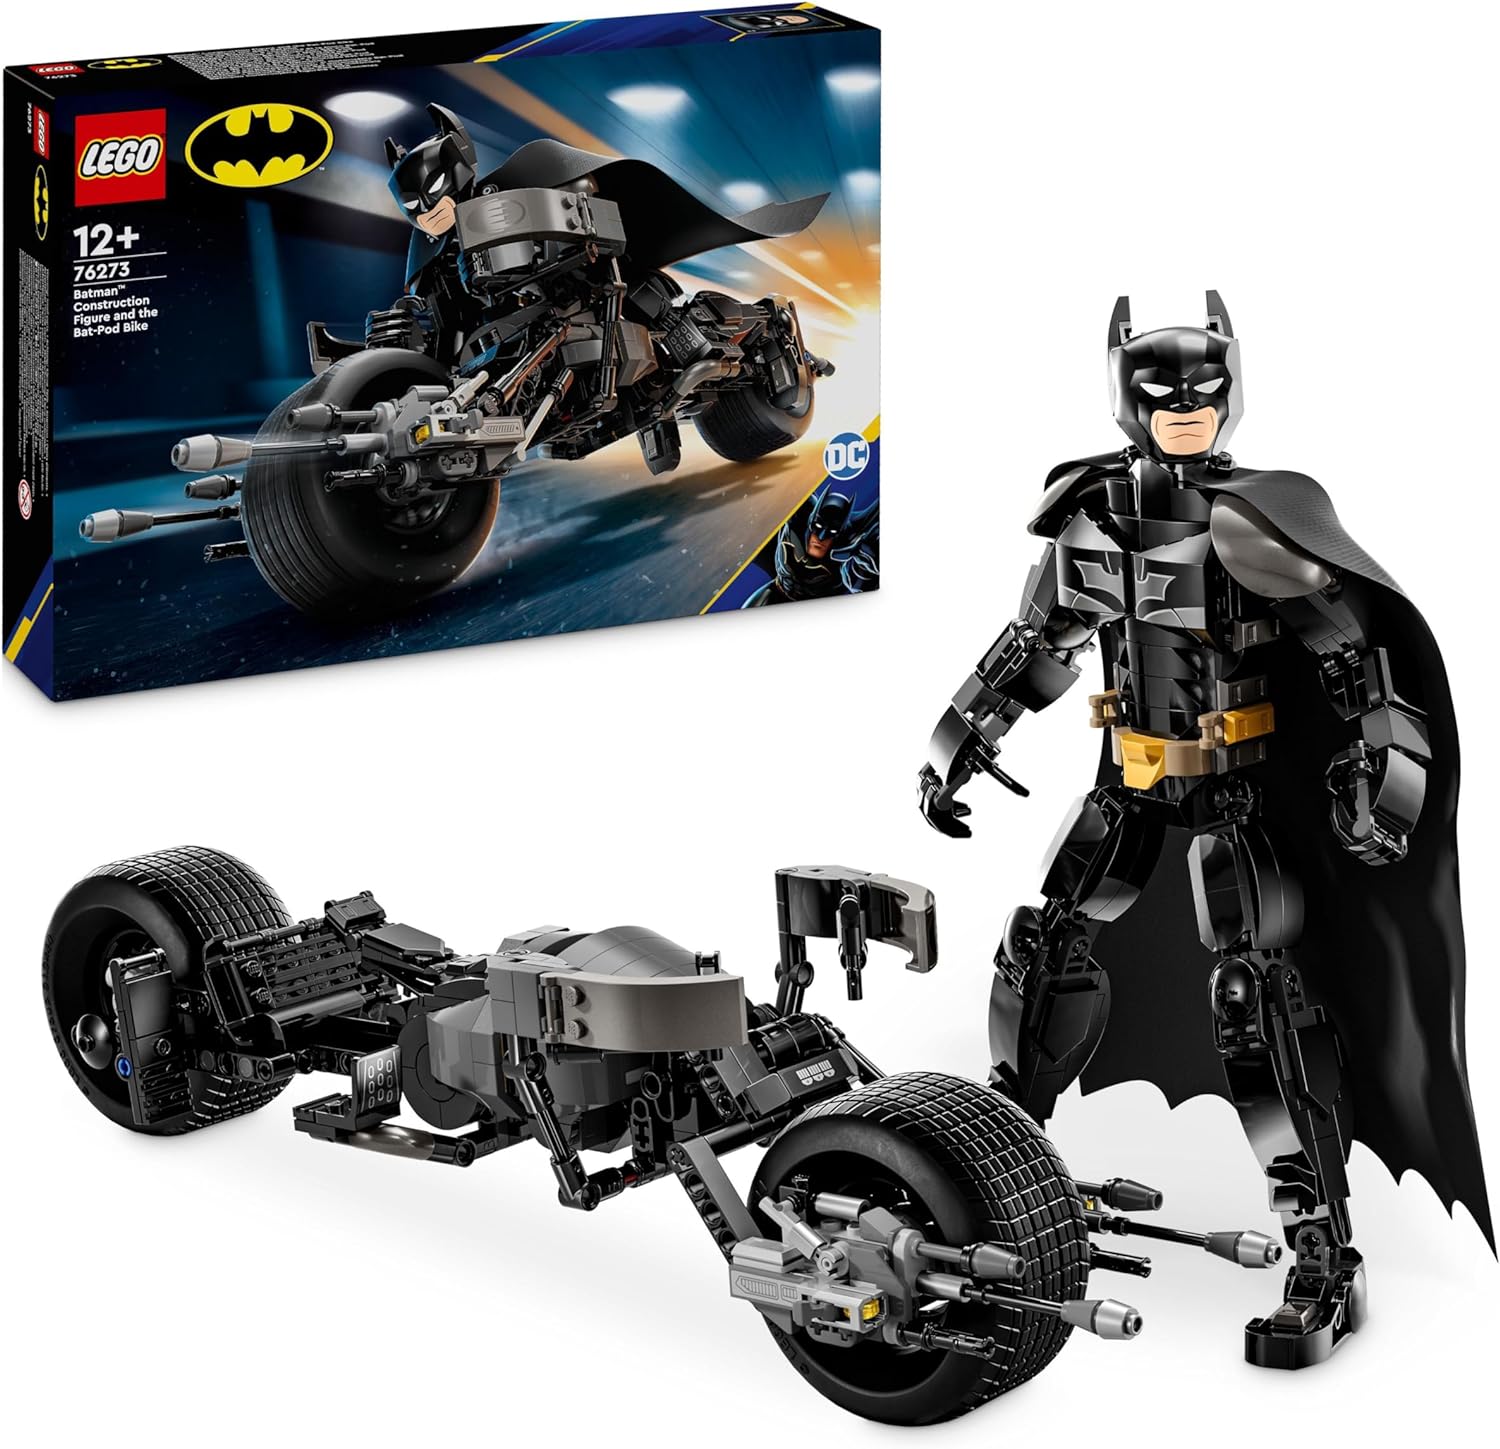 LEGO 76273 PERSONAGGIO COSTRUIBILE DI BATMAN CON BAT POD SUPER HEROES